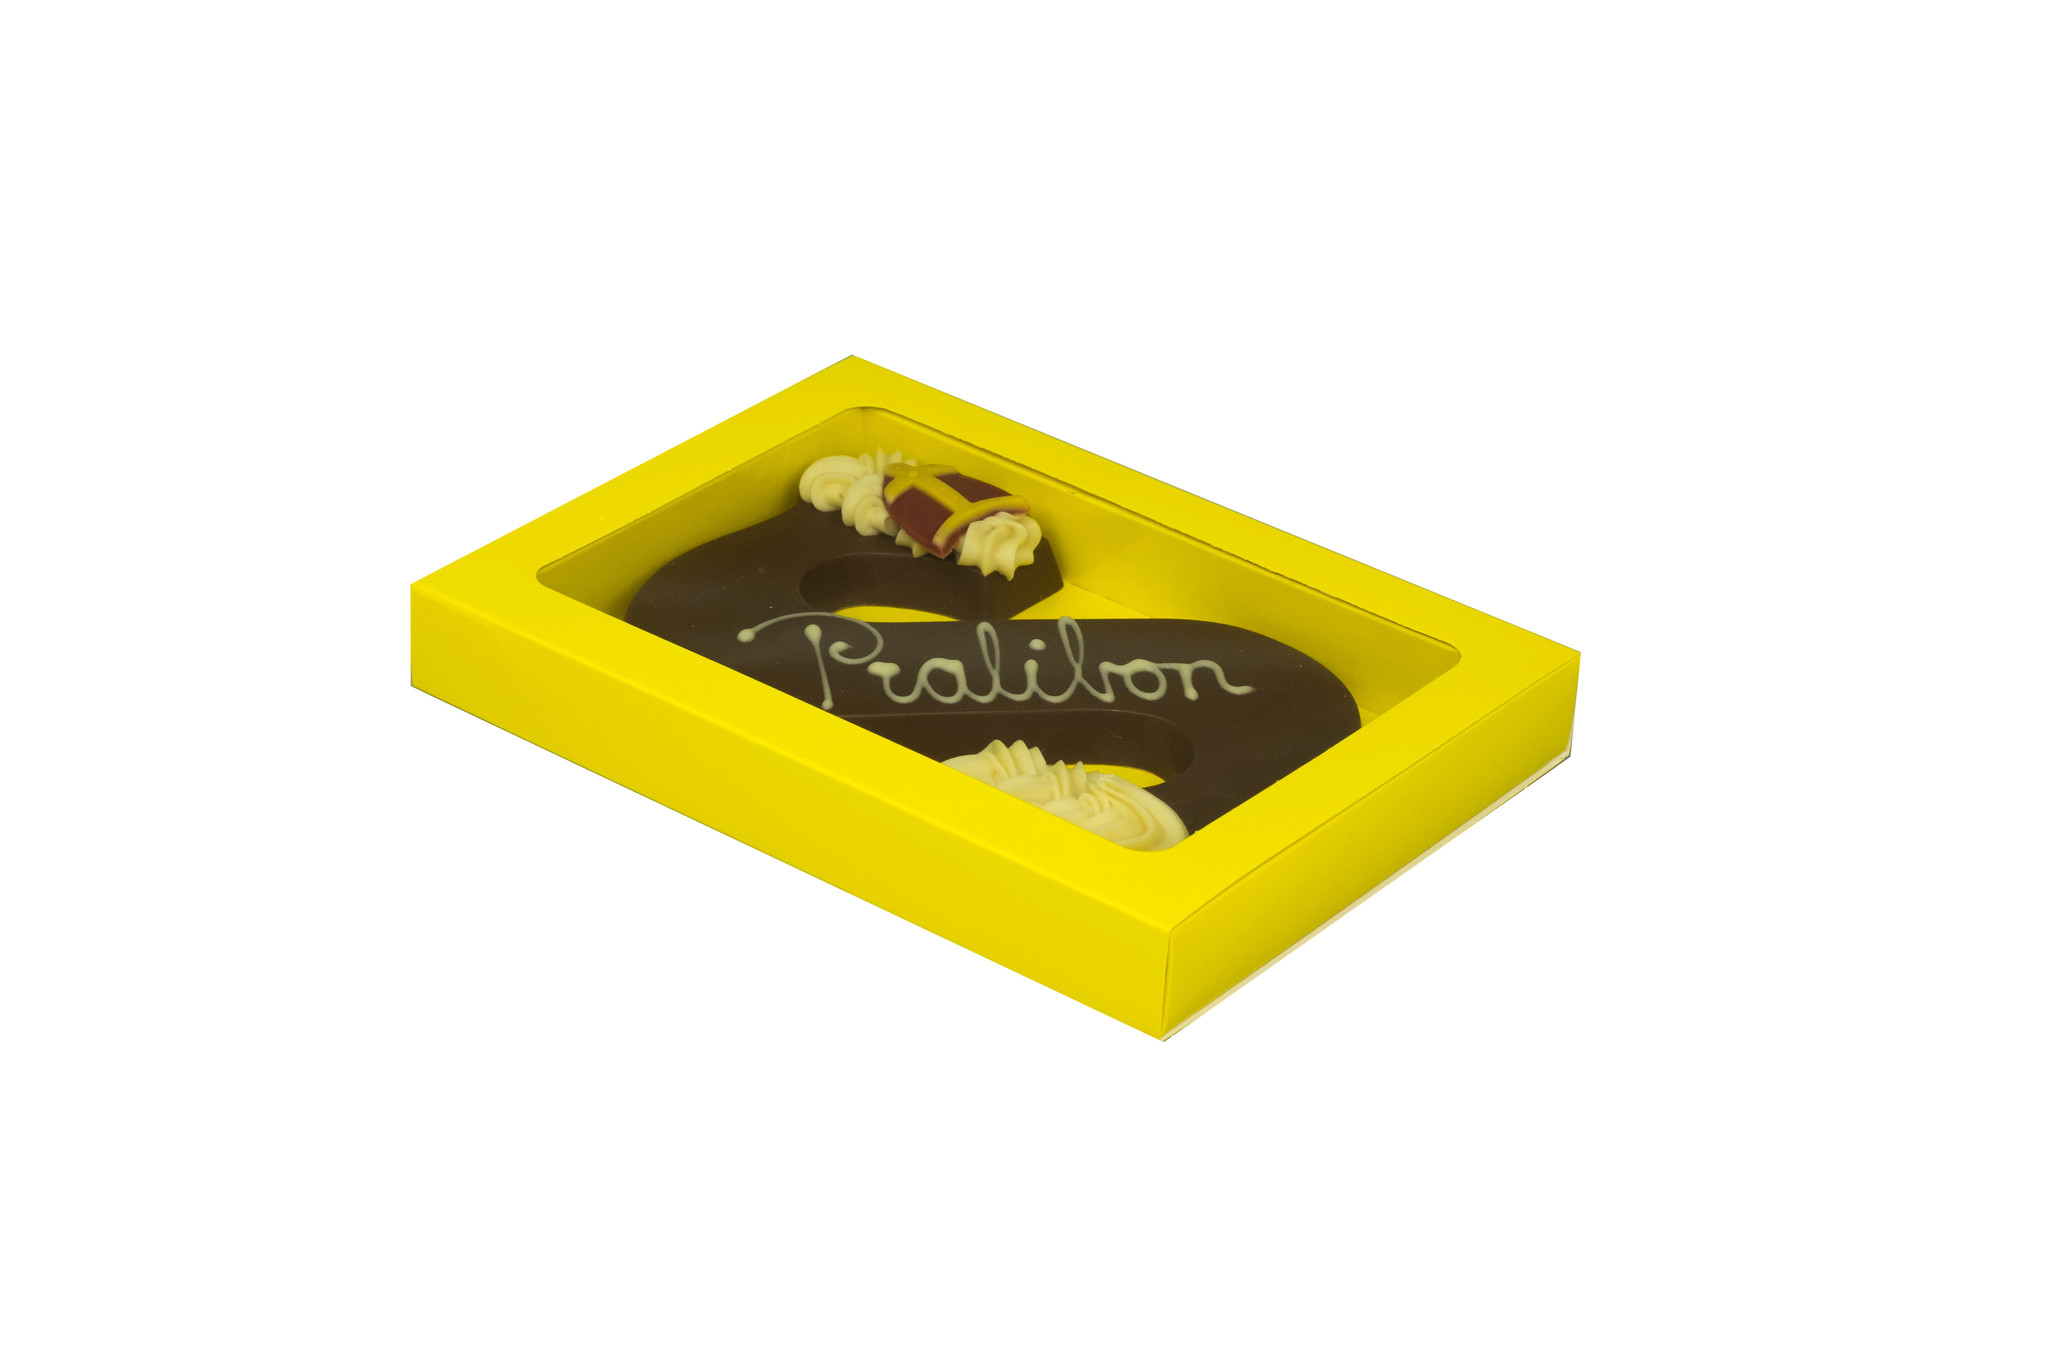 GK7 Boîte de fenêtre avec sleeve (jaune) - 175*120*27mm - 100 pièces